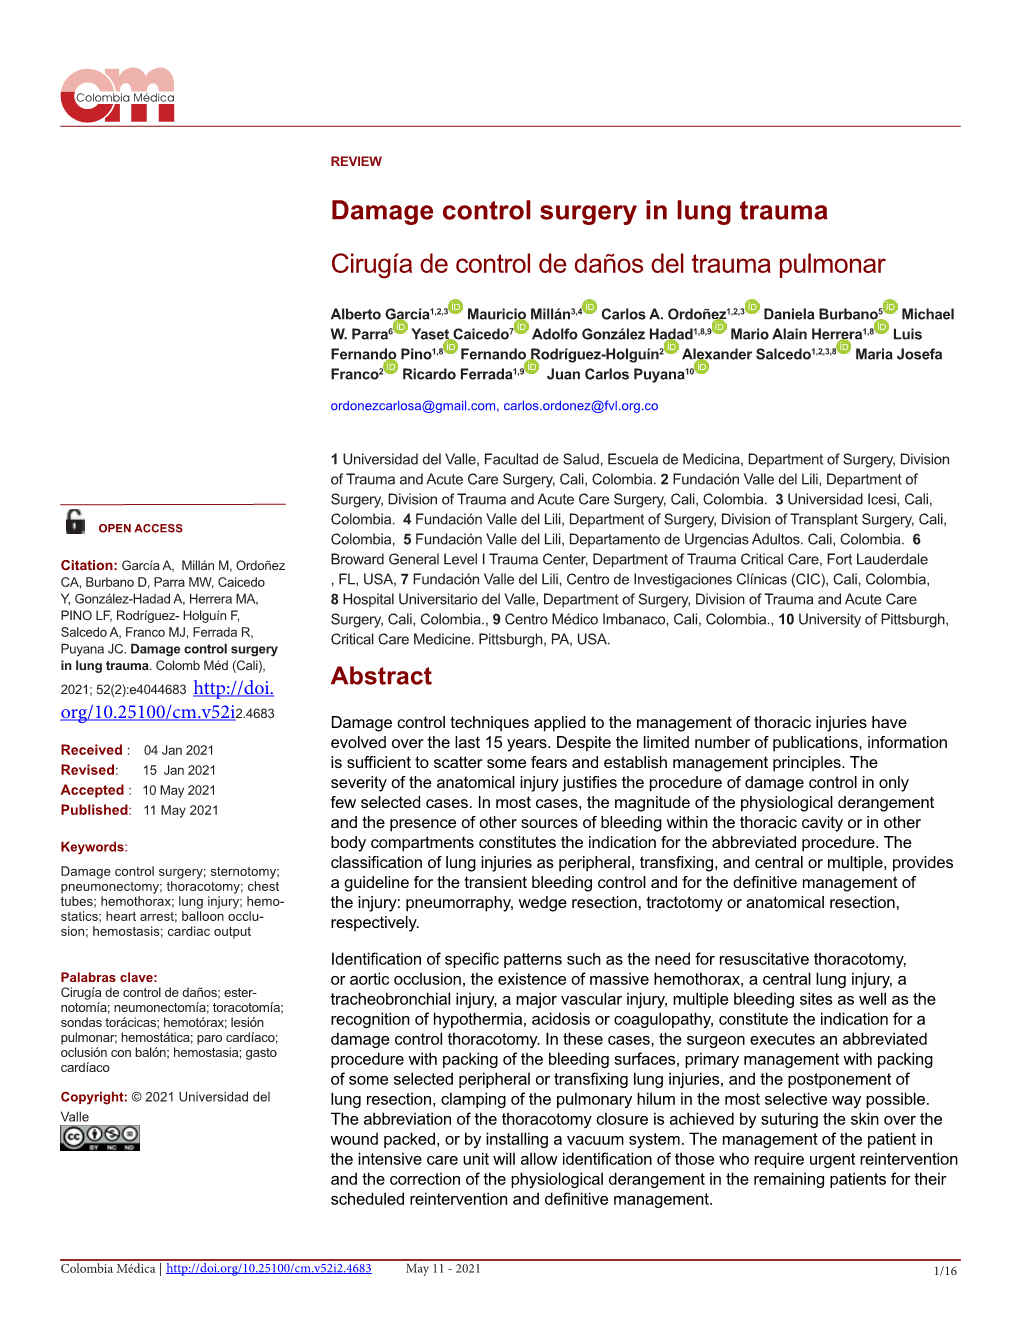 Damage Control Surgery in Lung Trauma Cirugía De Control De Daños Del Trauma Pulmonar